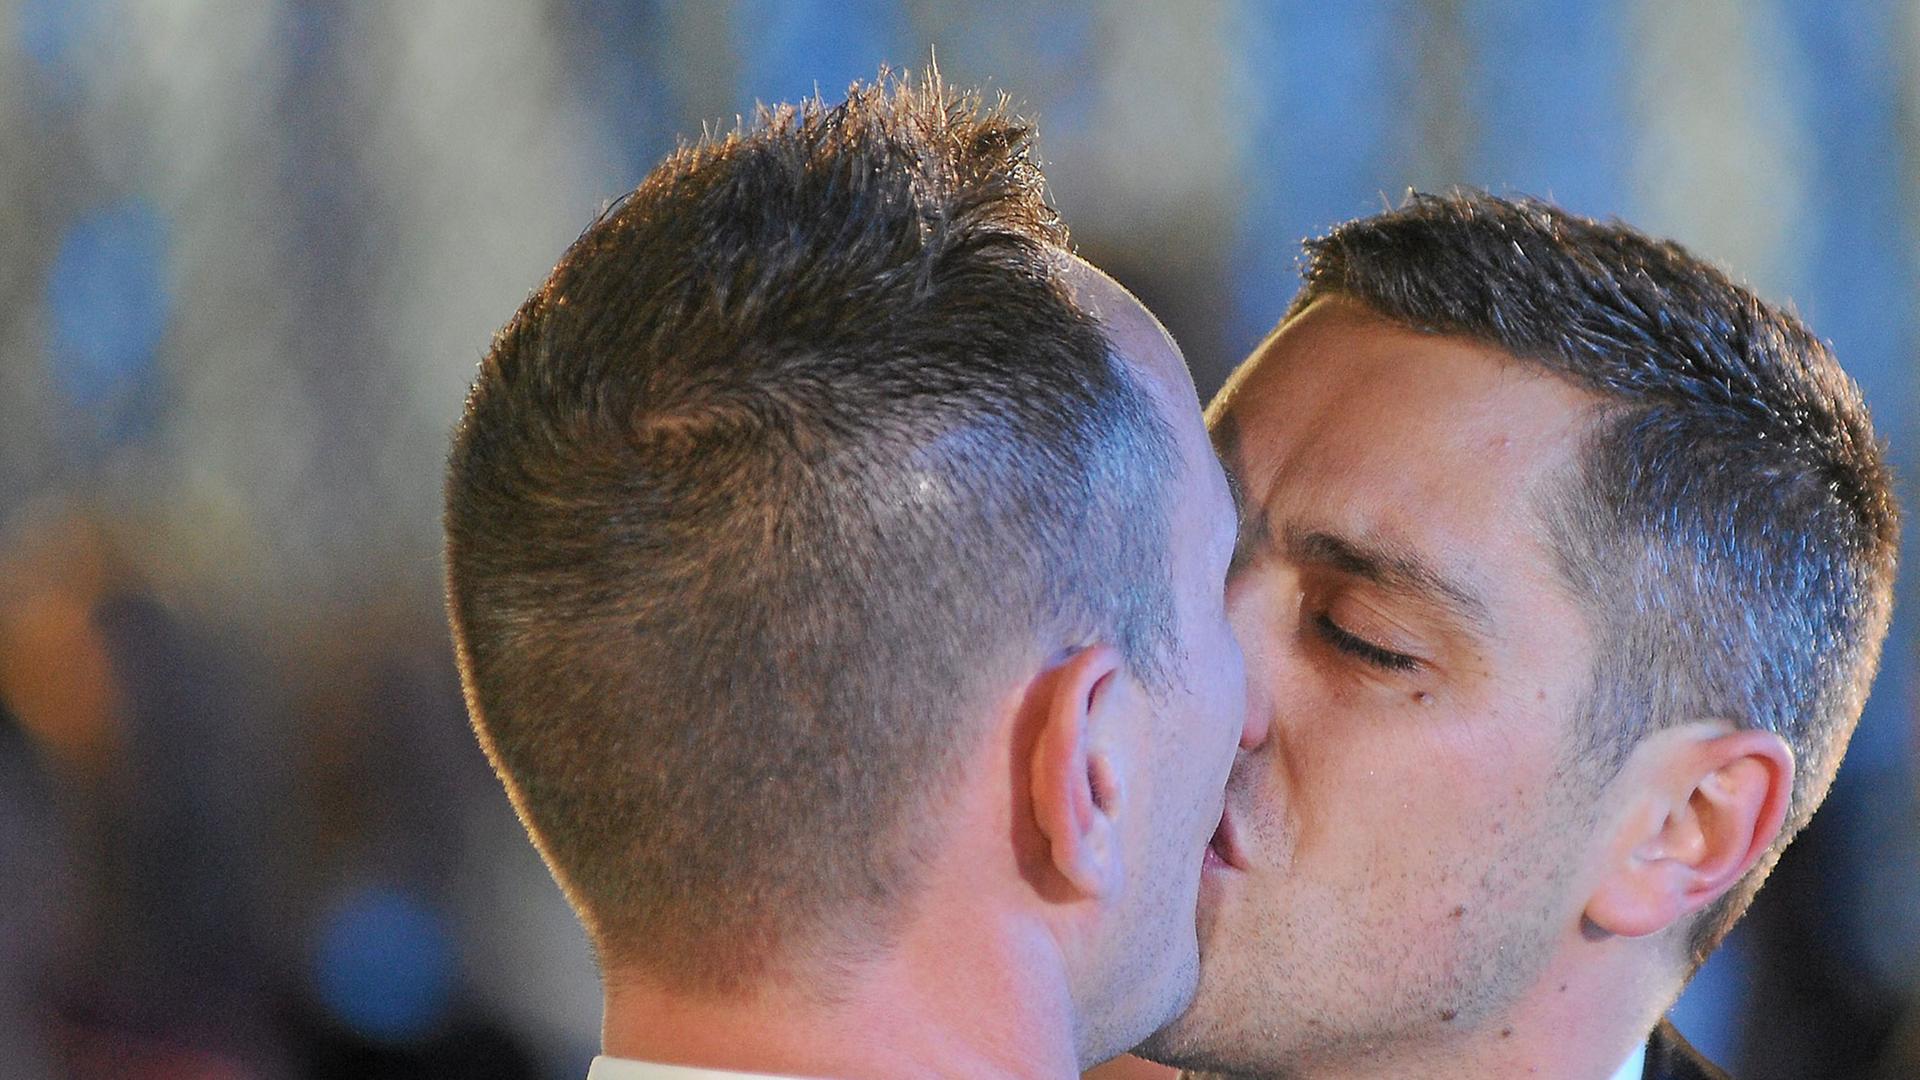 Vincent Autin und Bruno Boileau, Frankreichs erstes offiziell getrautes schwules Paar, küssen sich.